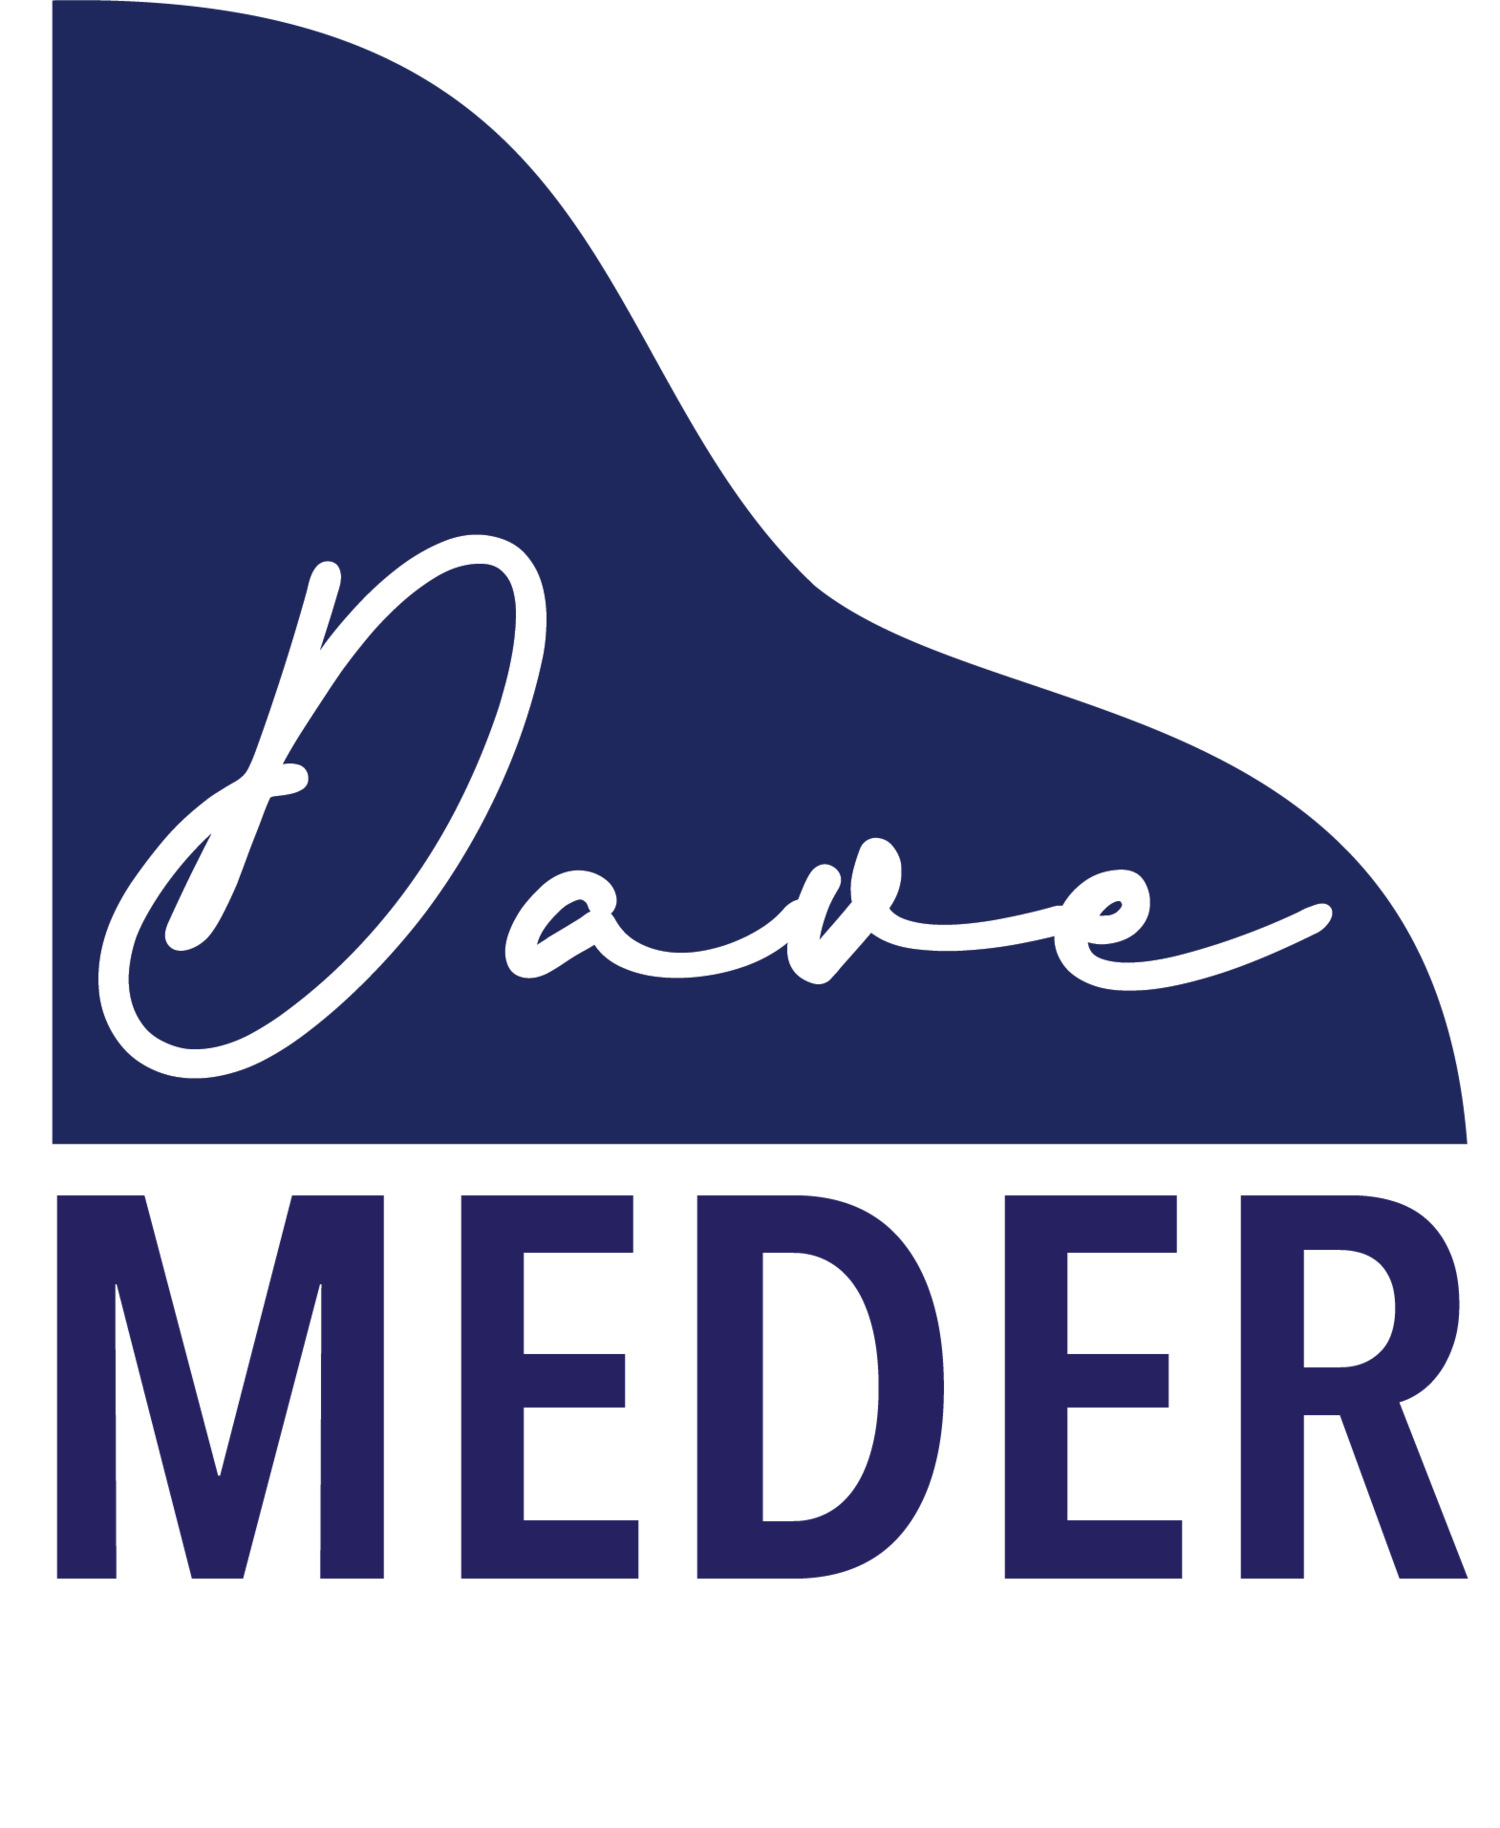 Dave Meder